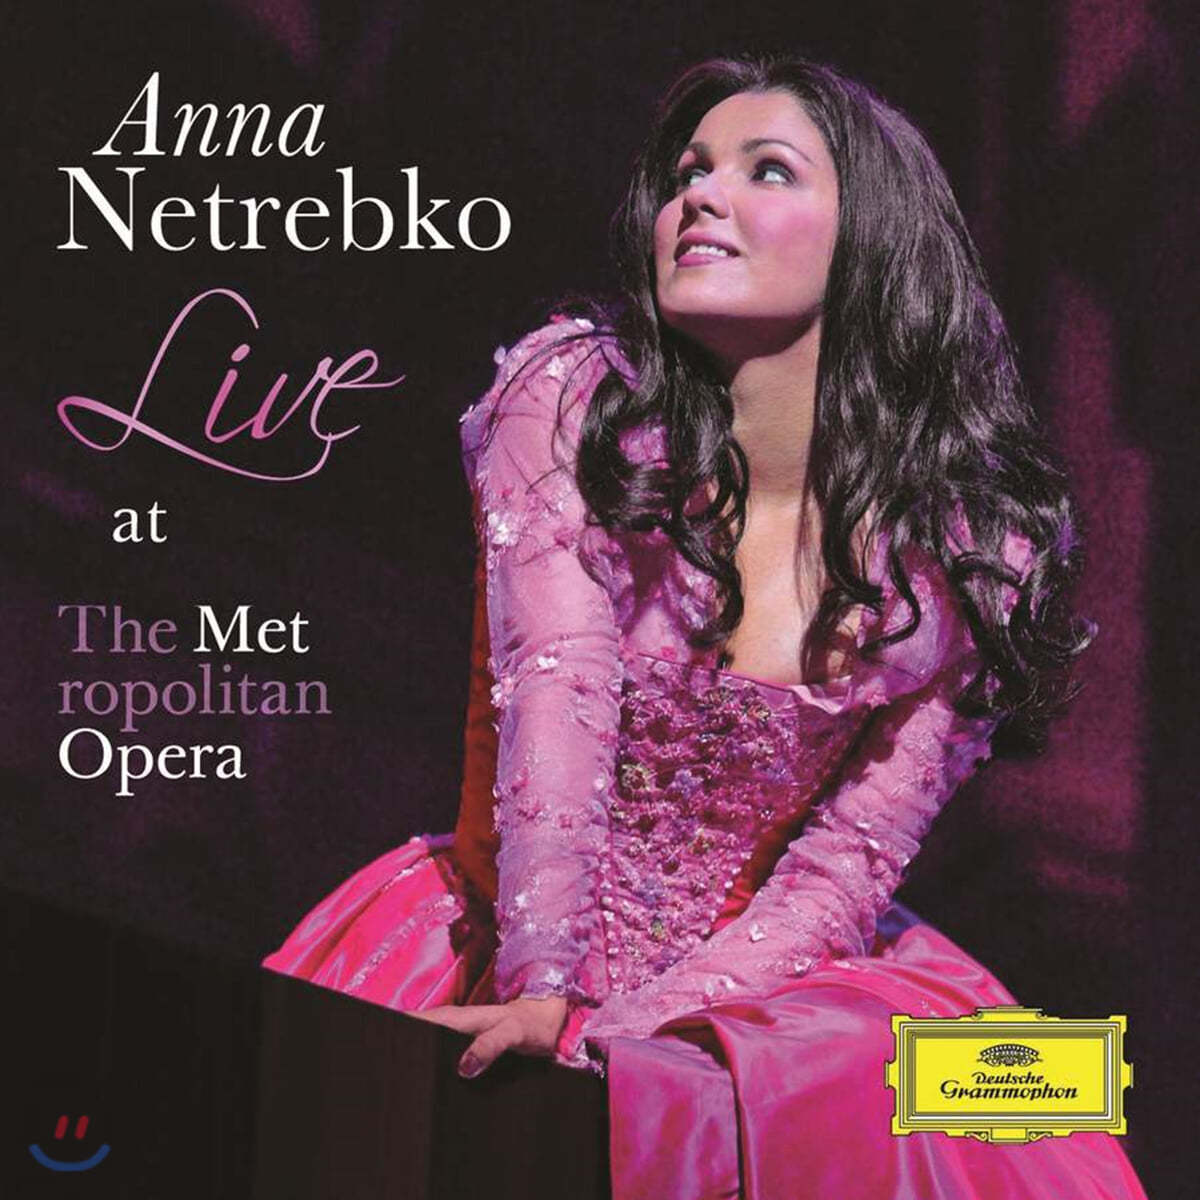 안나 네트렙코 메트로폴리탄 라이브 (Anna Netrebko Live at the Metropolitan Opera)